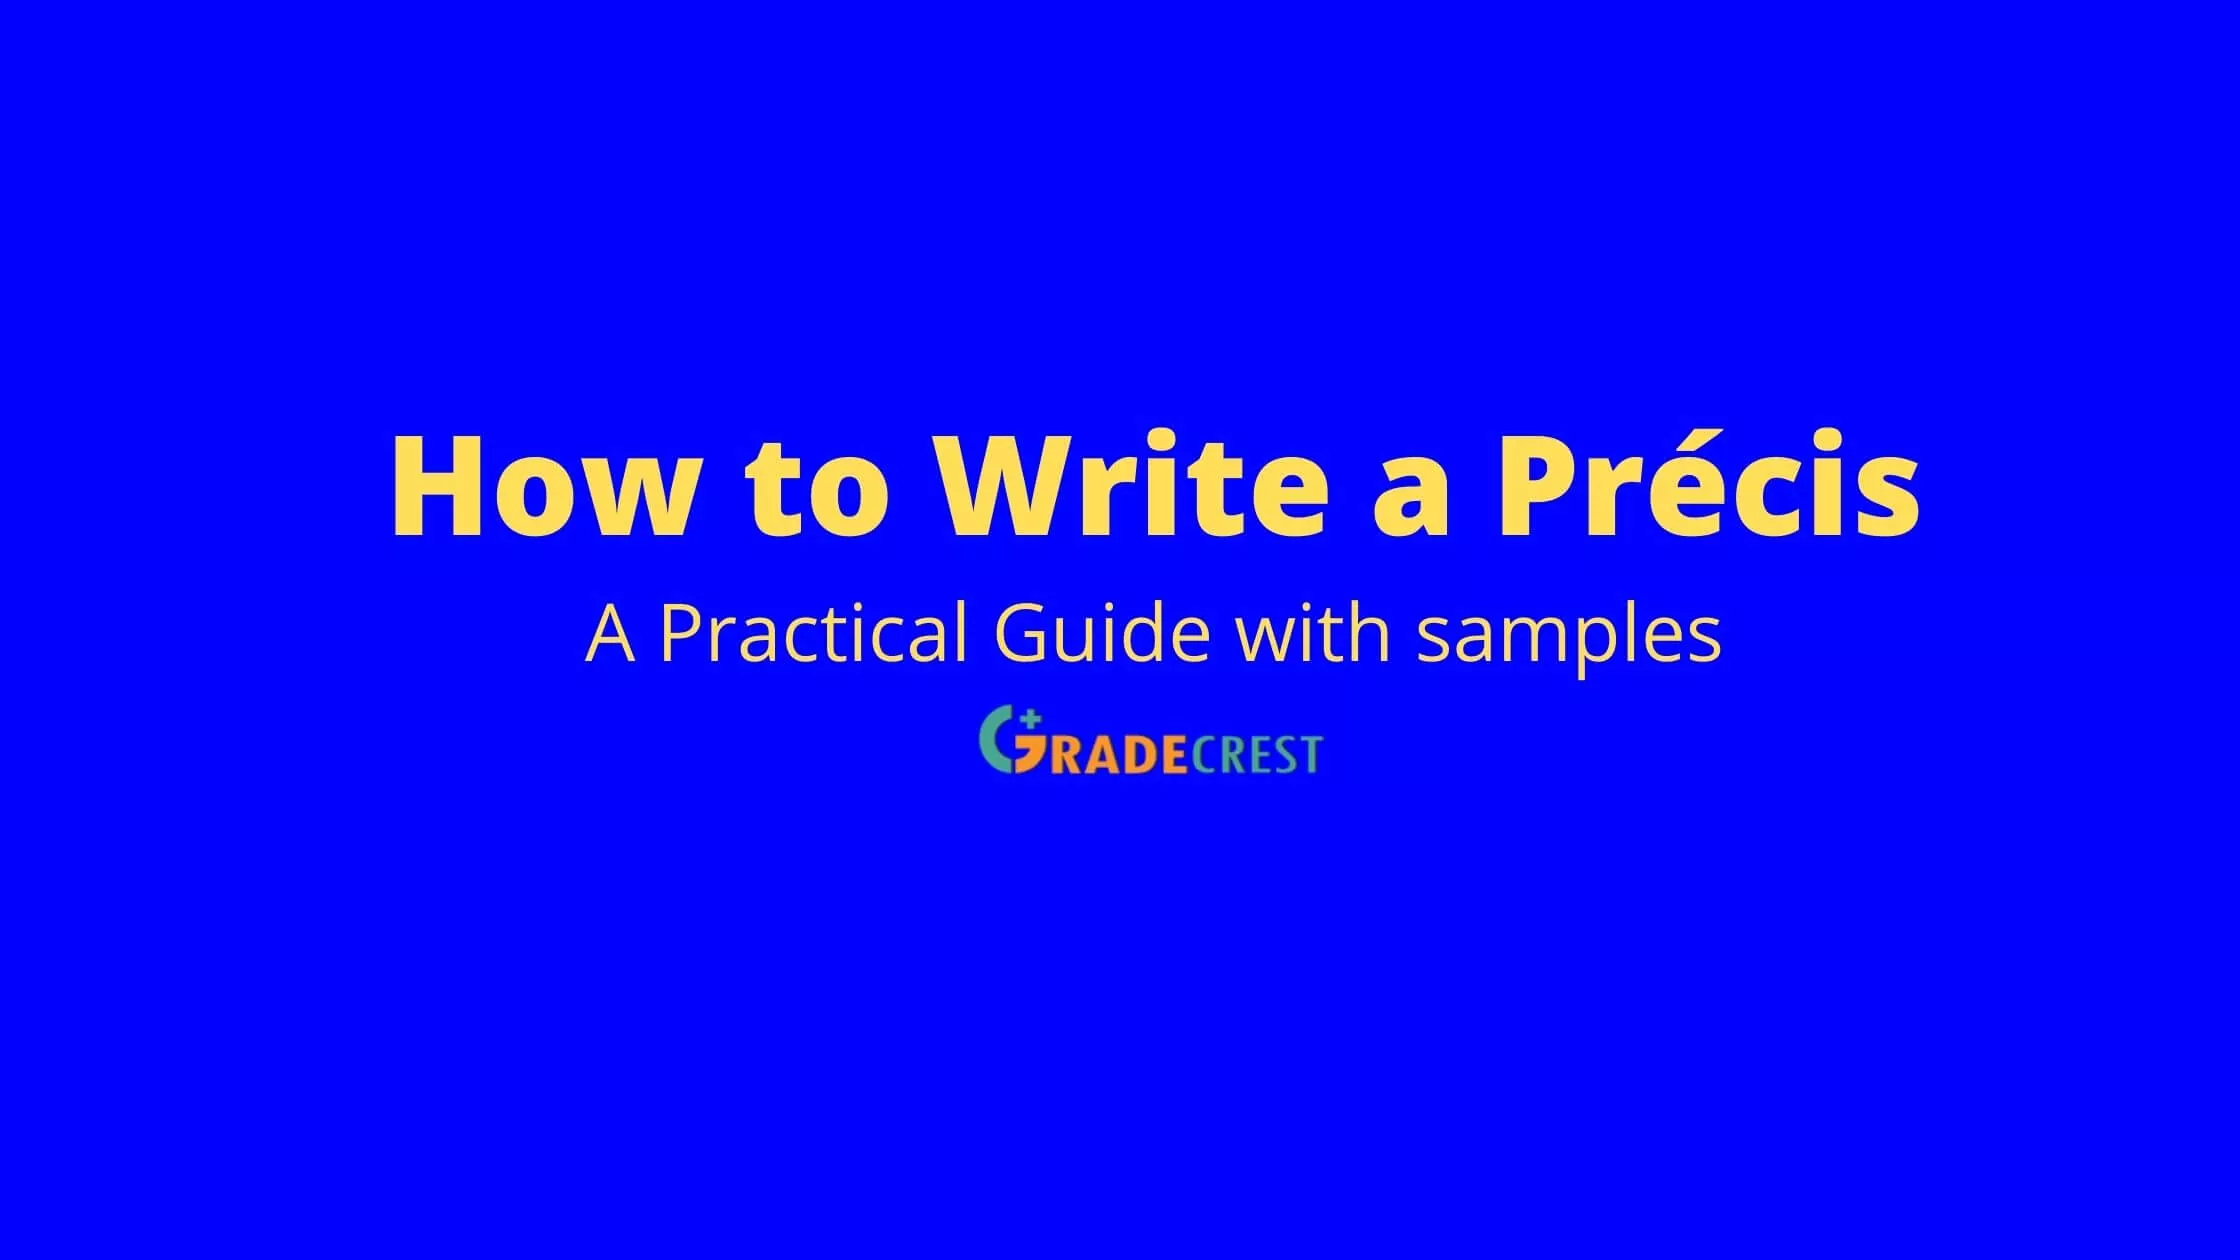 How to write a Precis